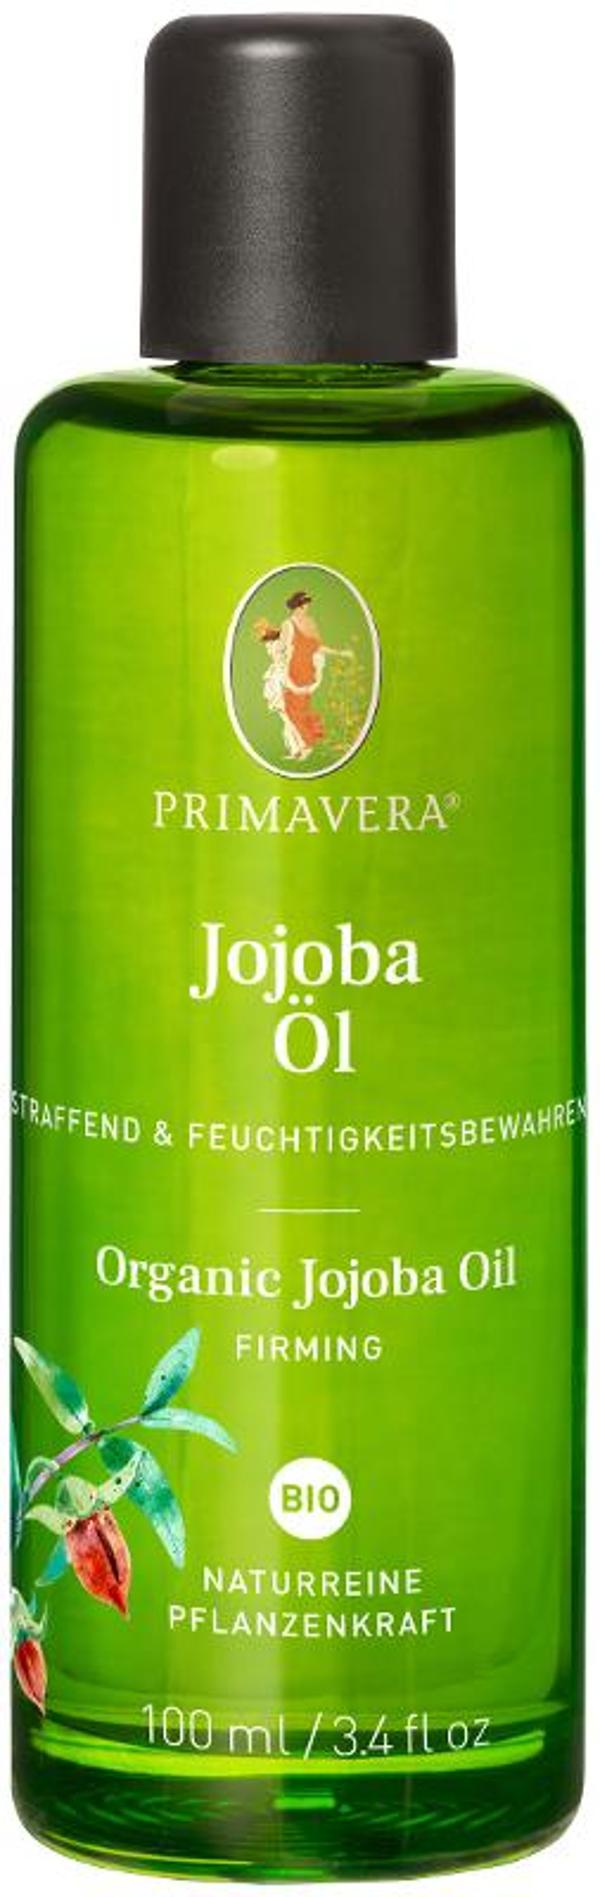 Produktfoto zu Jojobaöl Primavera 100ml